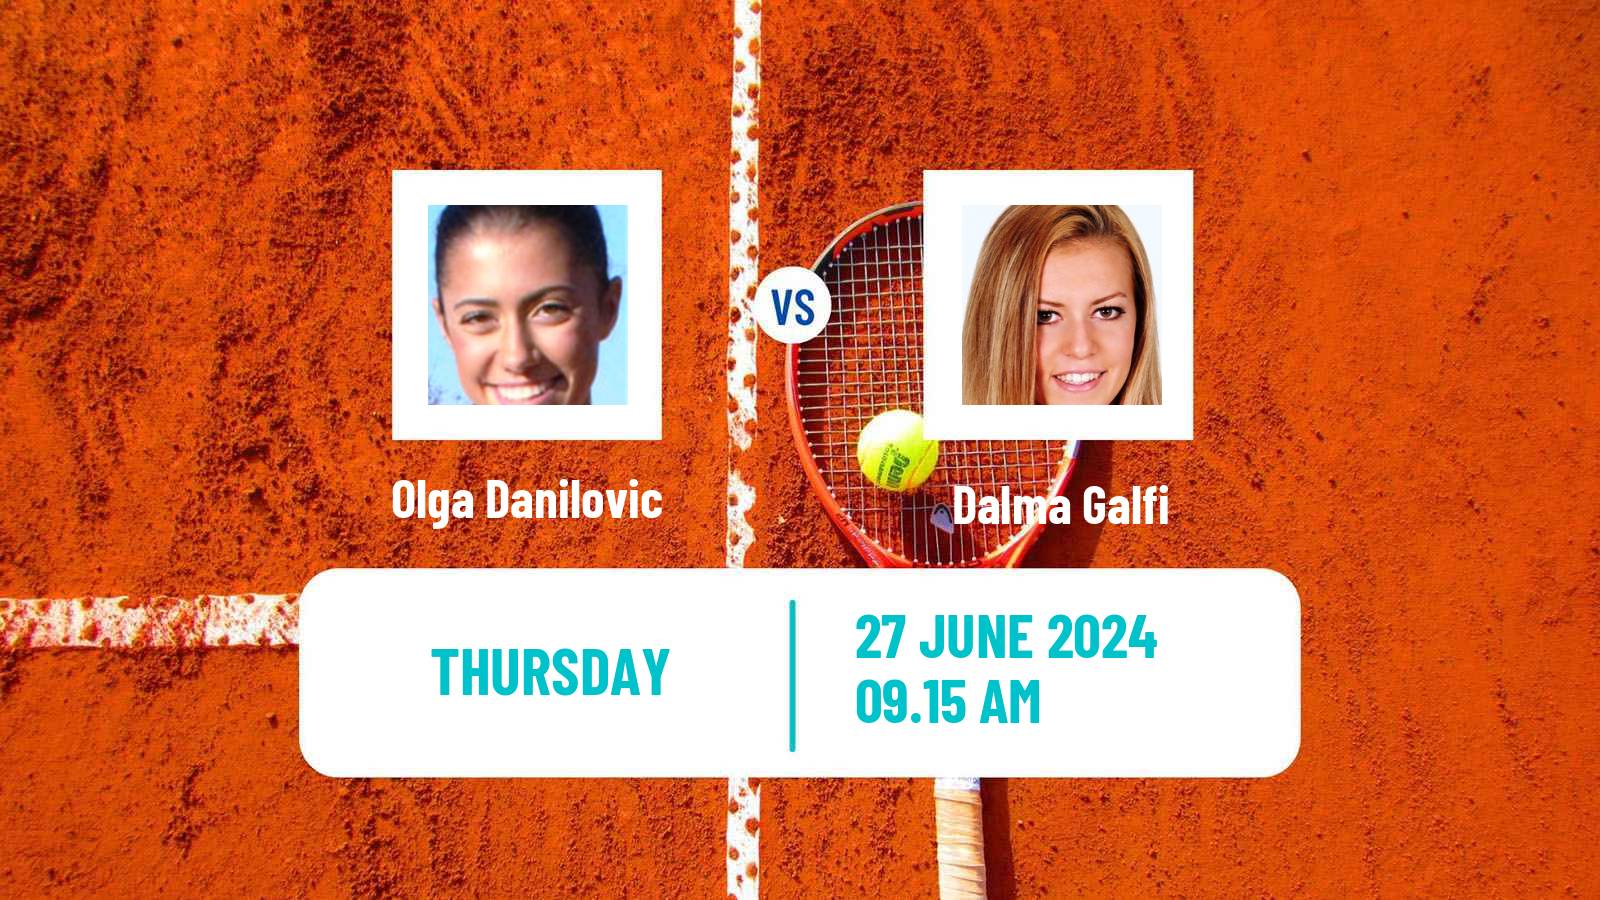 Tennis WTA Wimbledon Olga Danilovic - Dalma Galfi